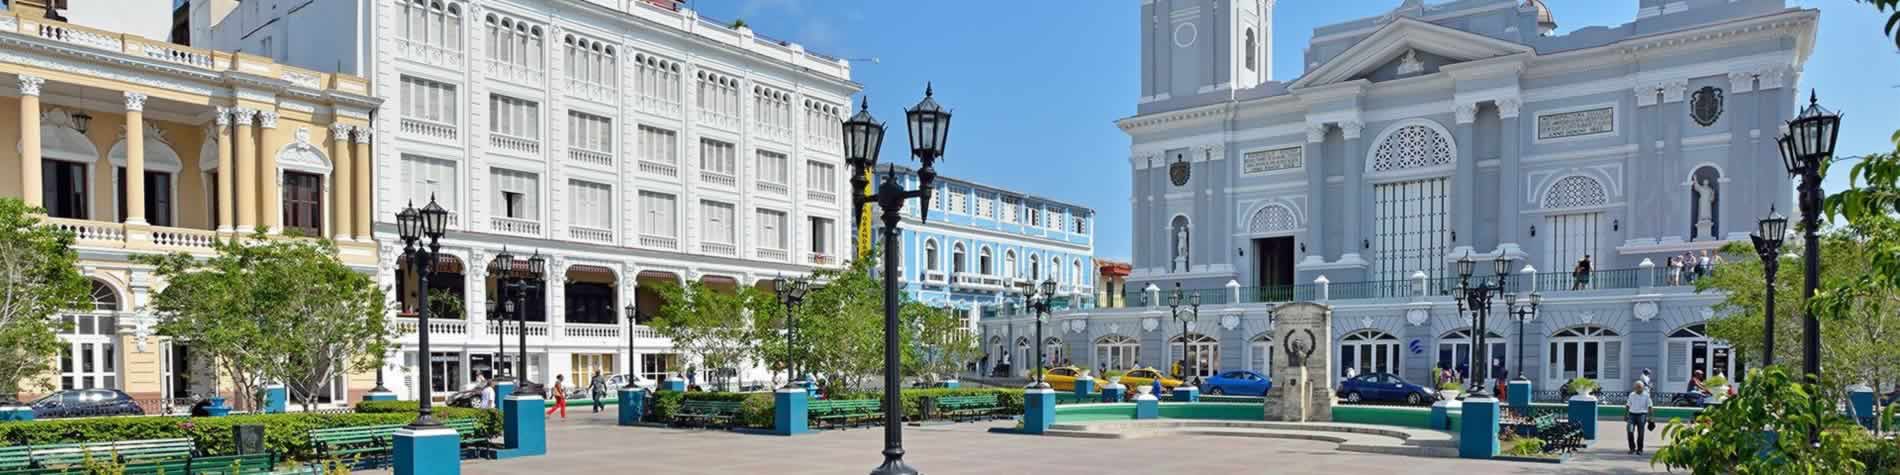 Plaza centro de la ciudad